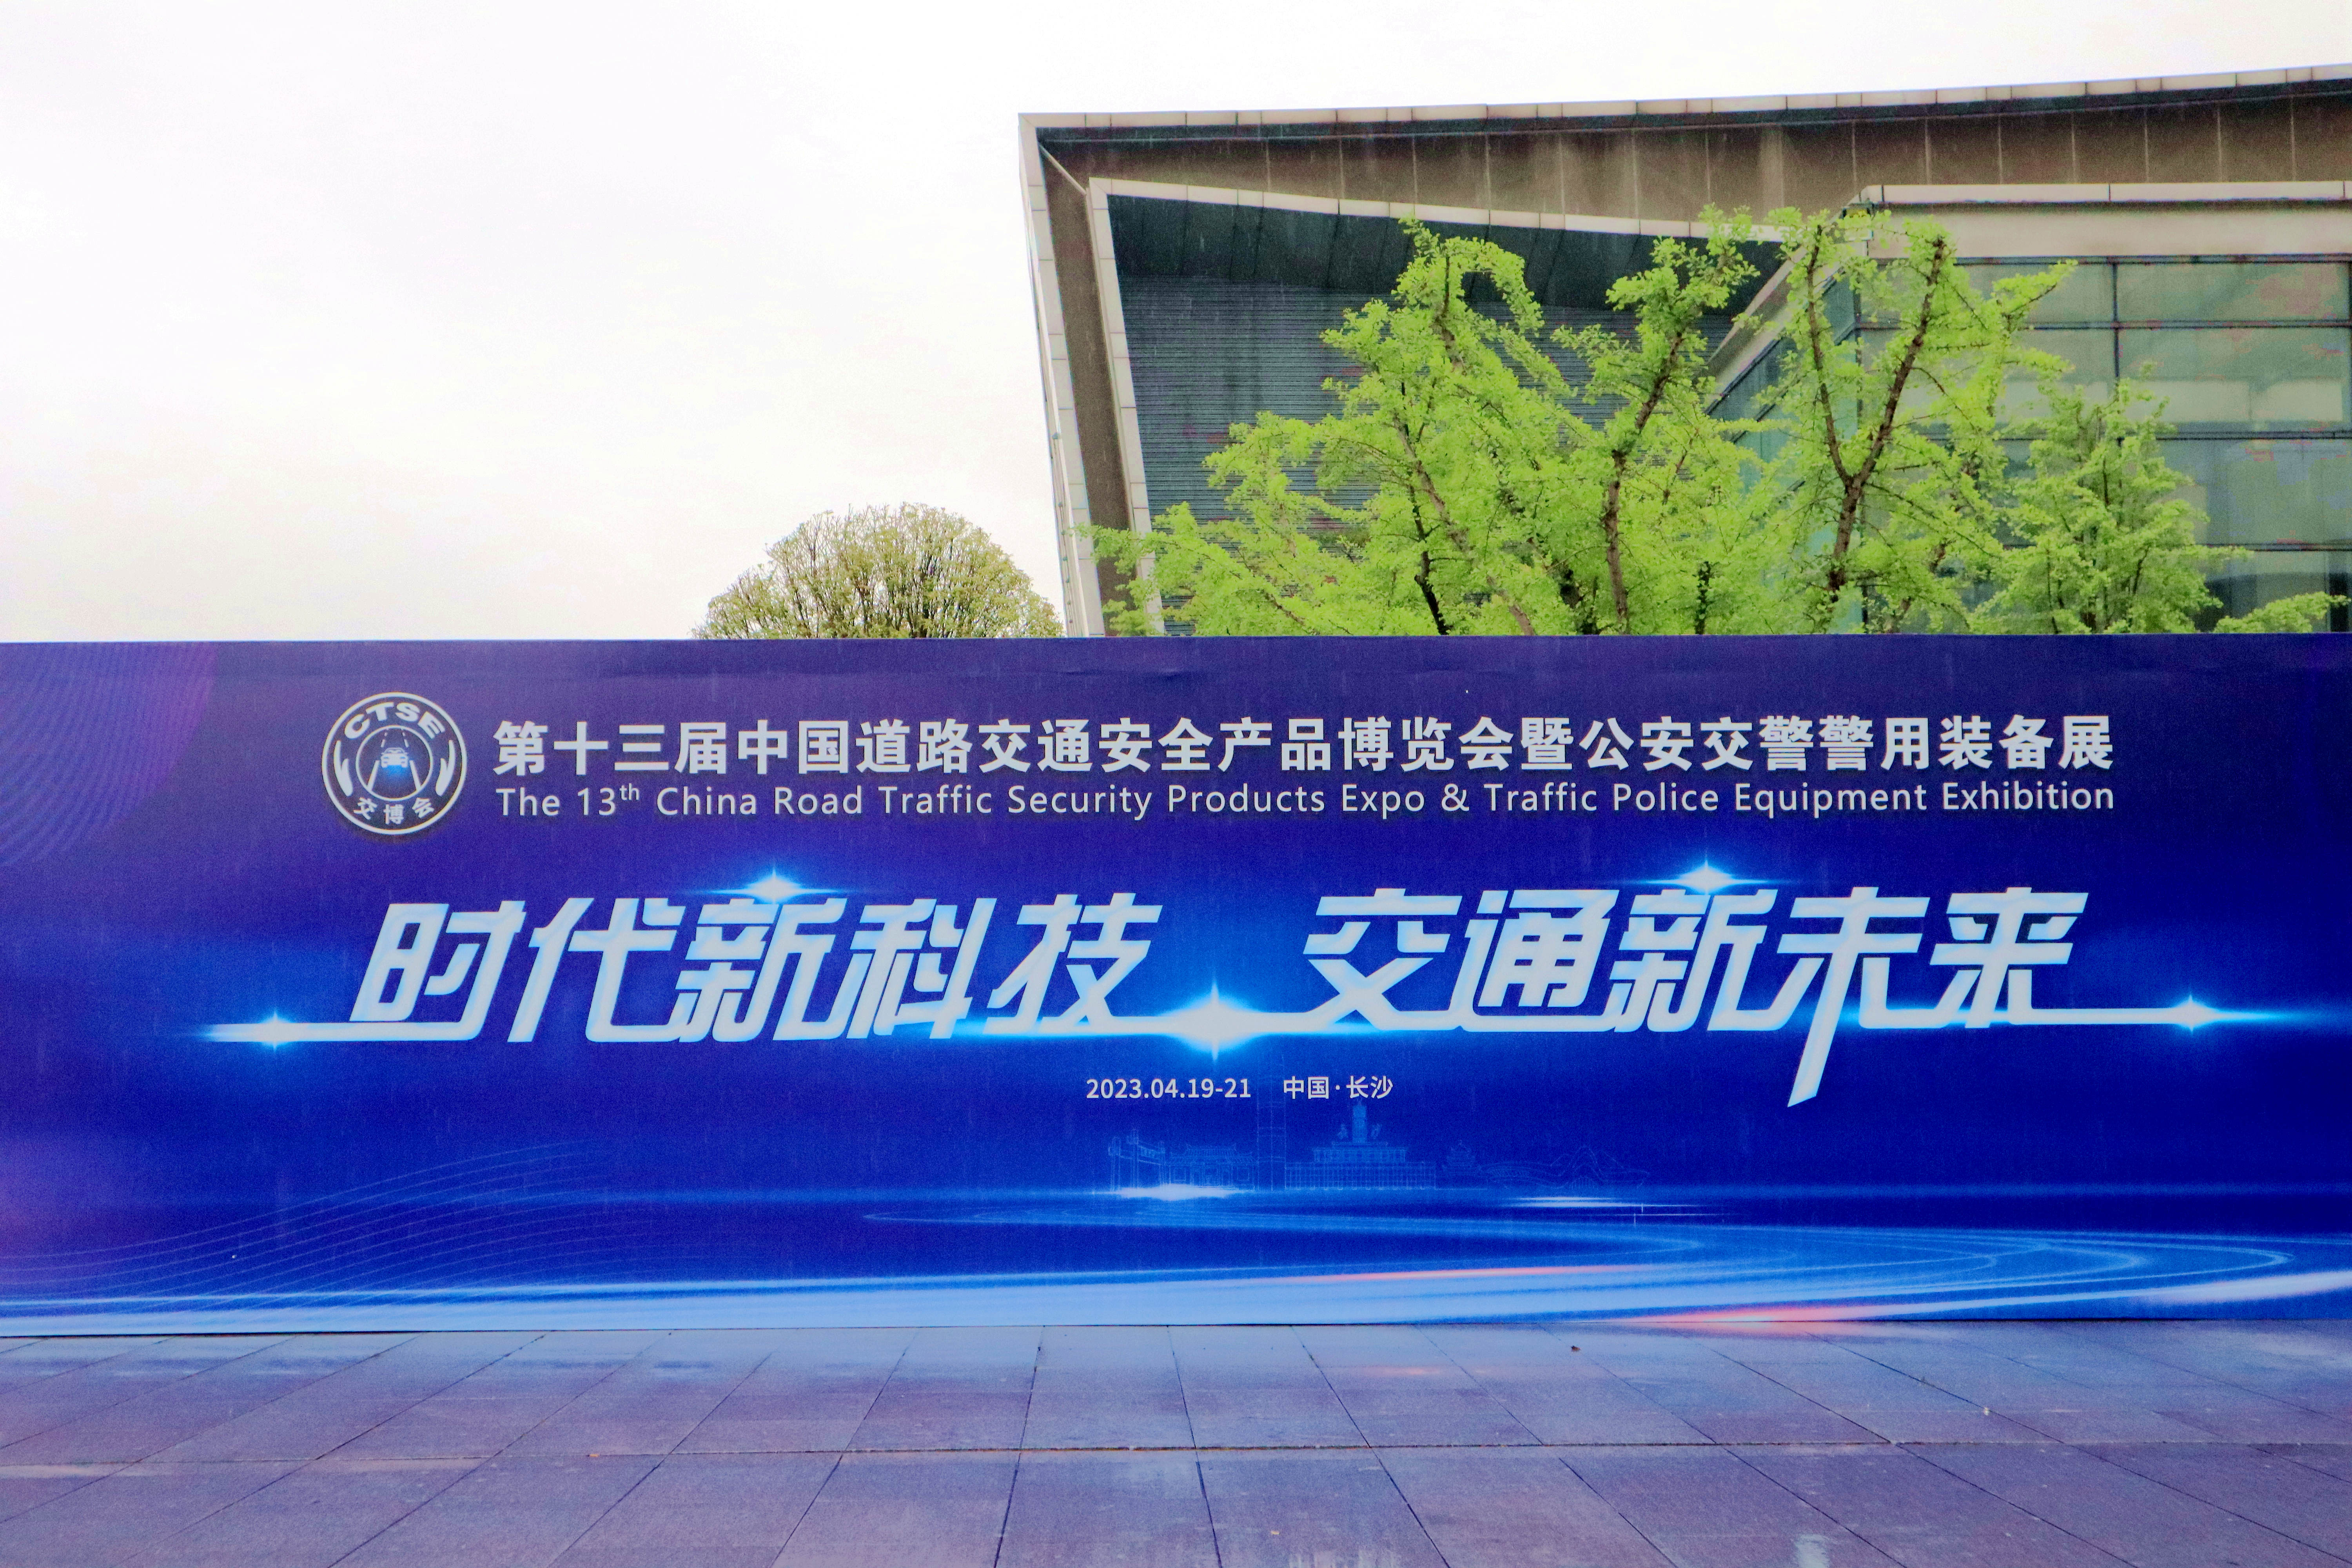 中交通力建设股份有限公司参加第十三届中国道路交通安全产品博览会